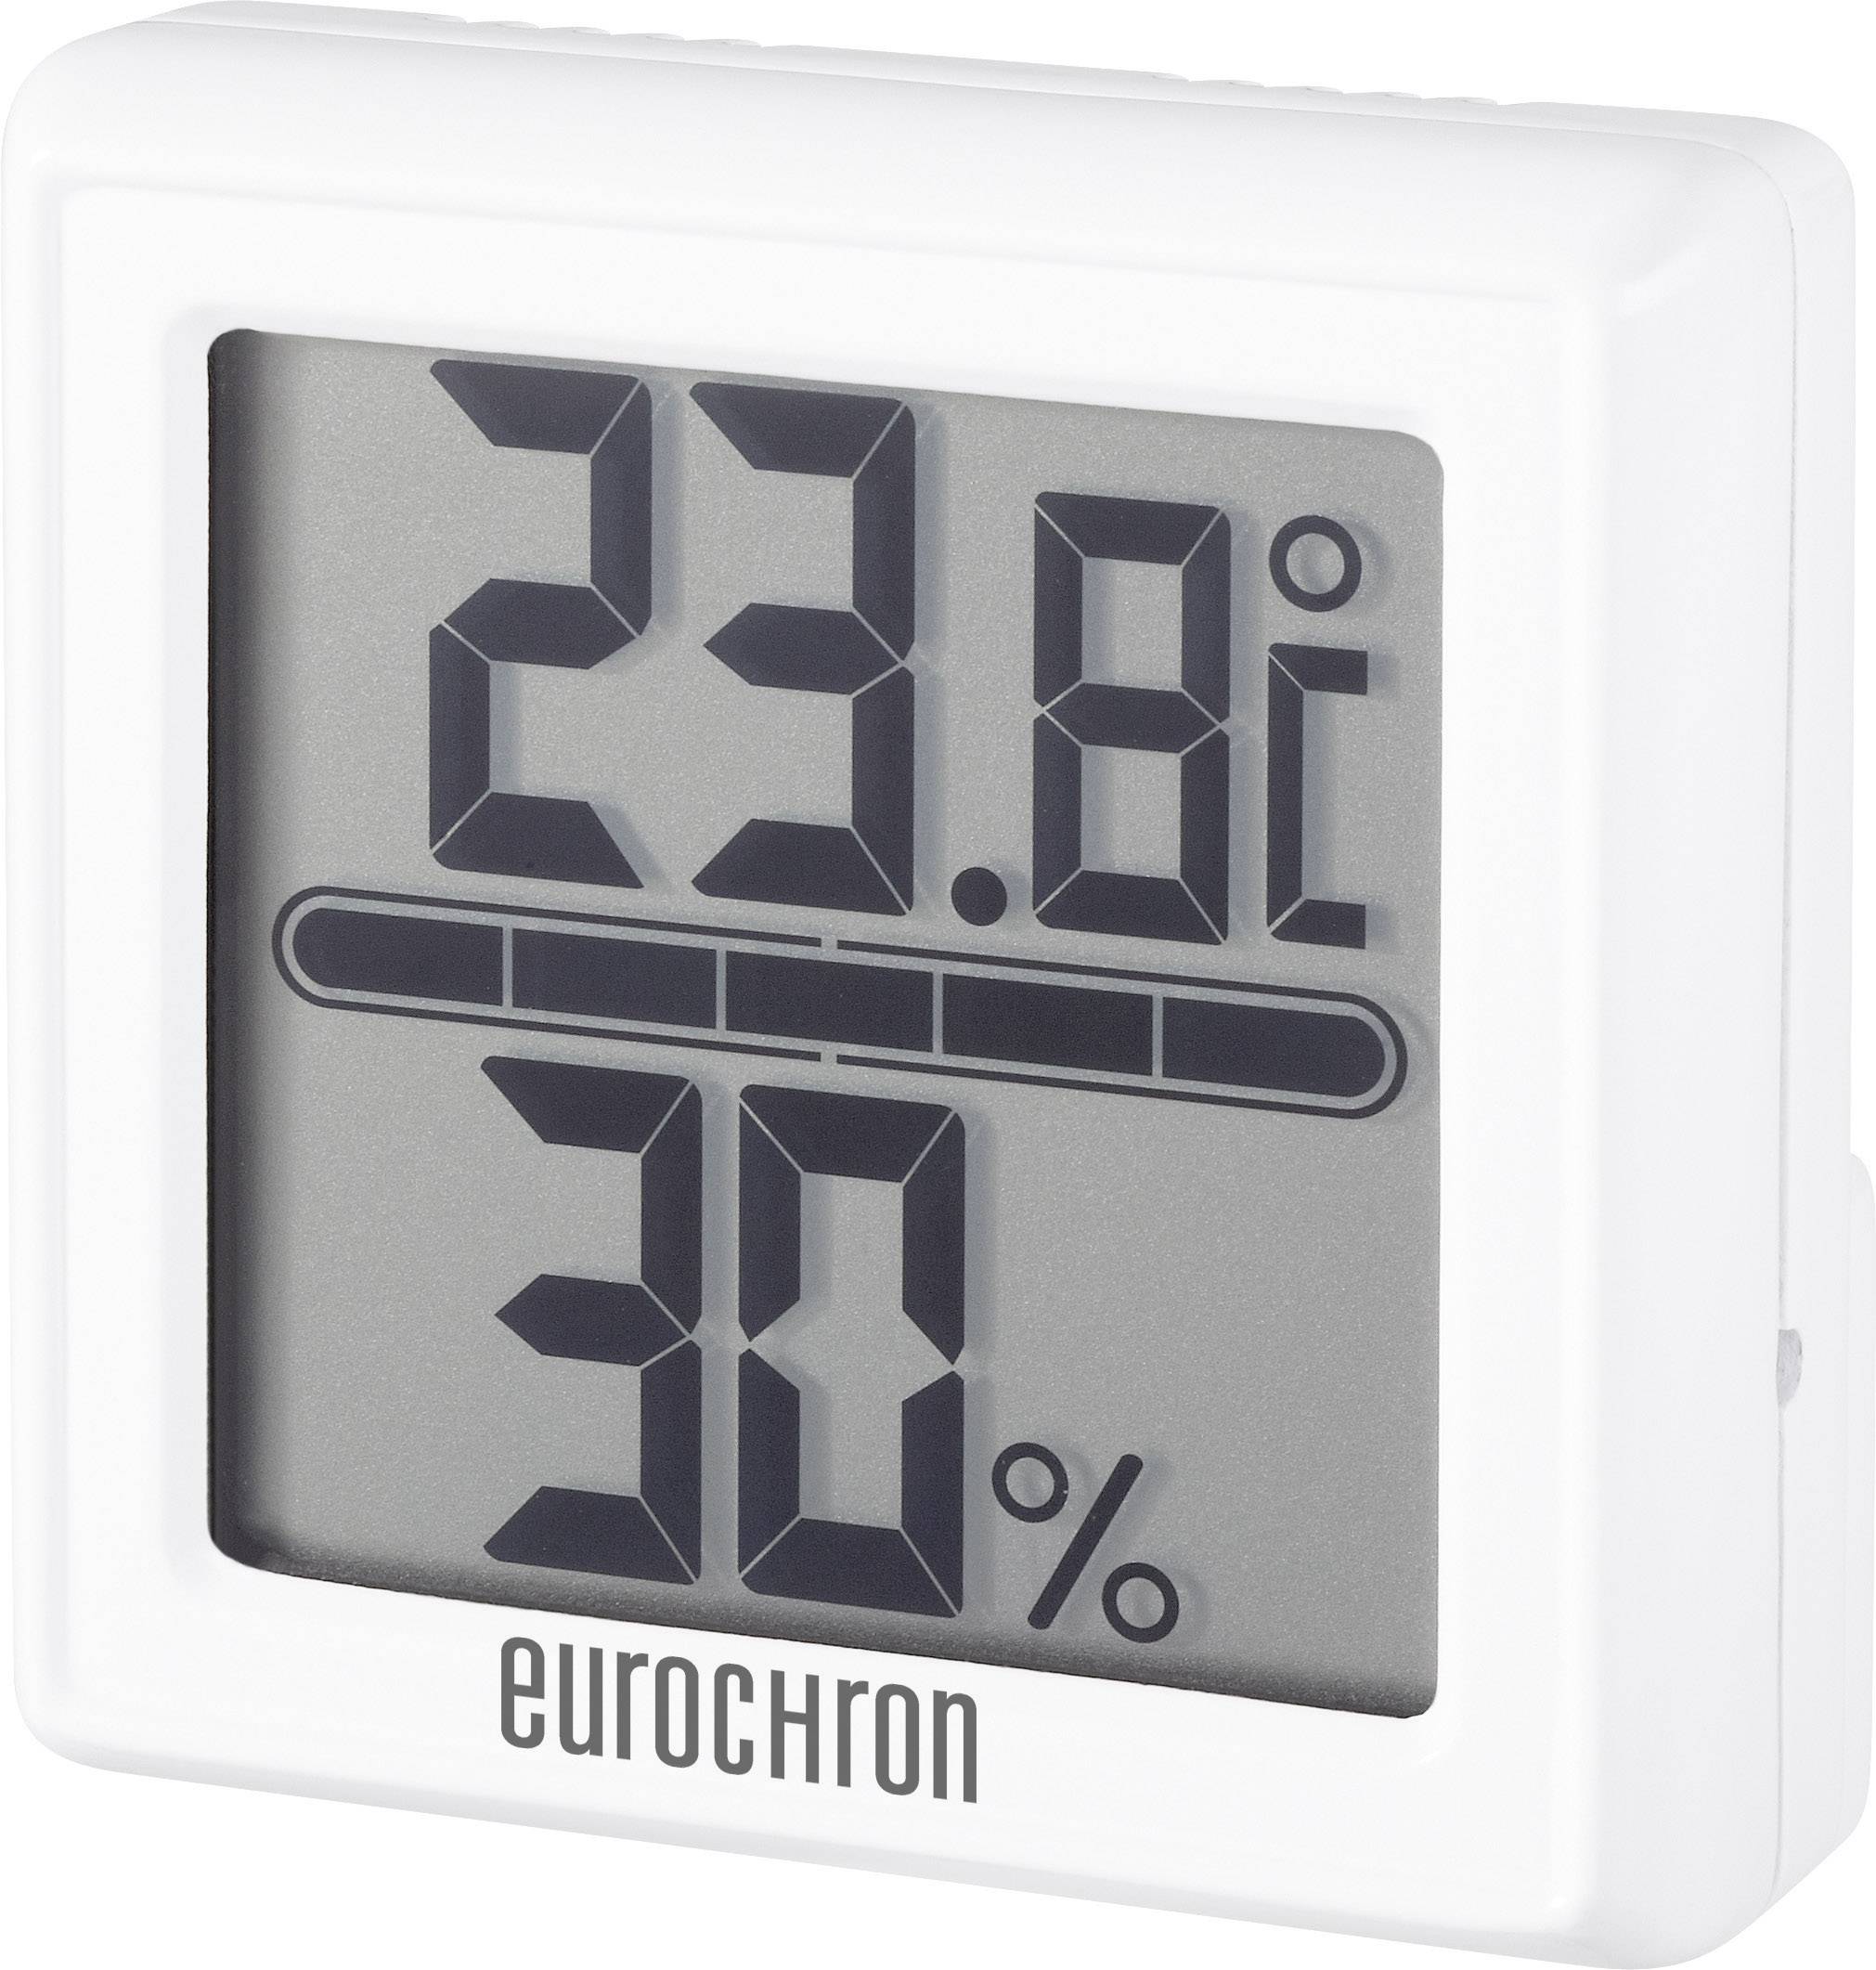 CONRAD Thermo-/Hygrometer Eurochron ETH 5500